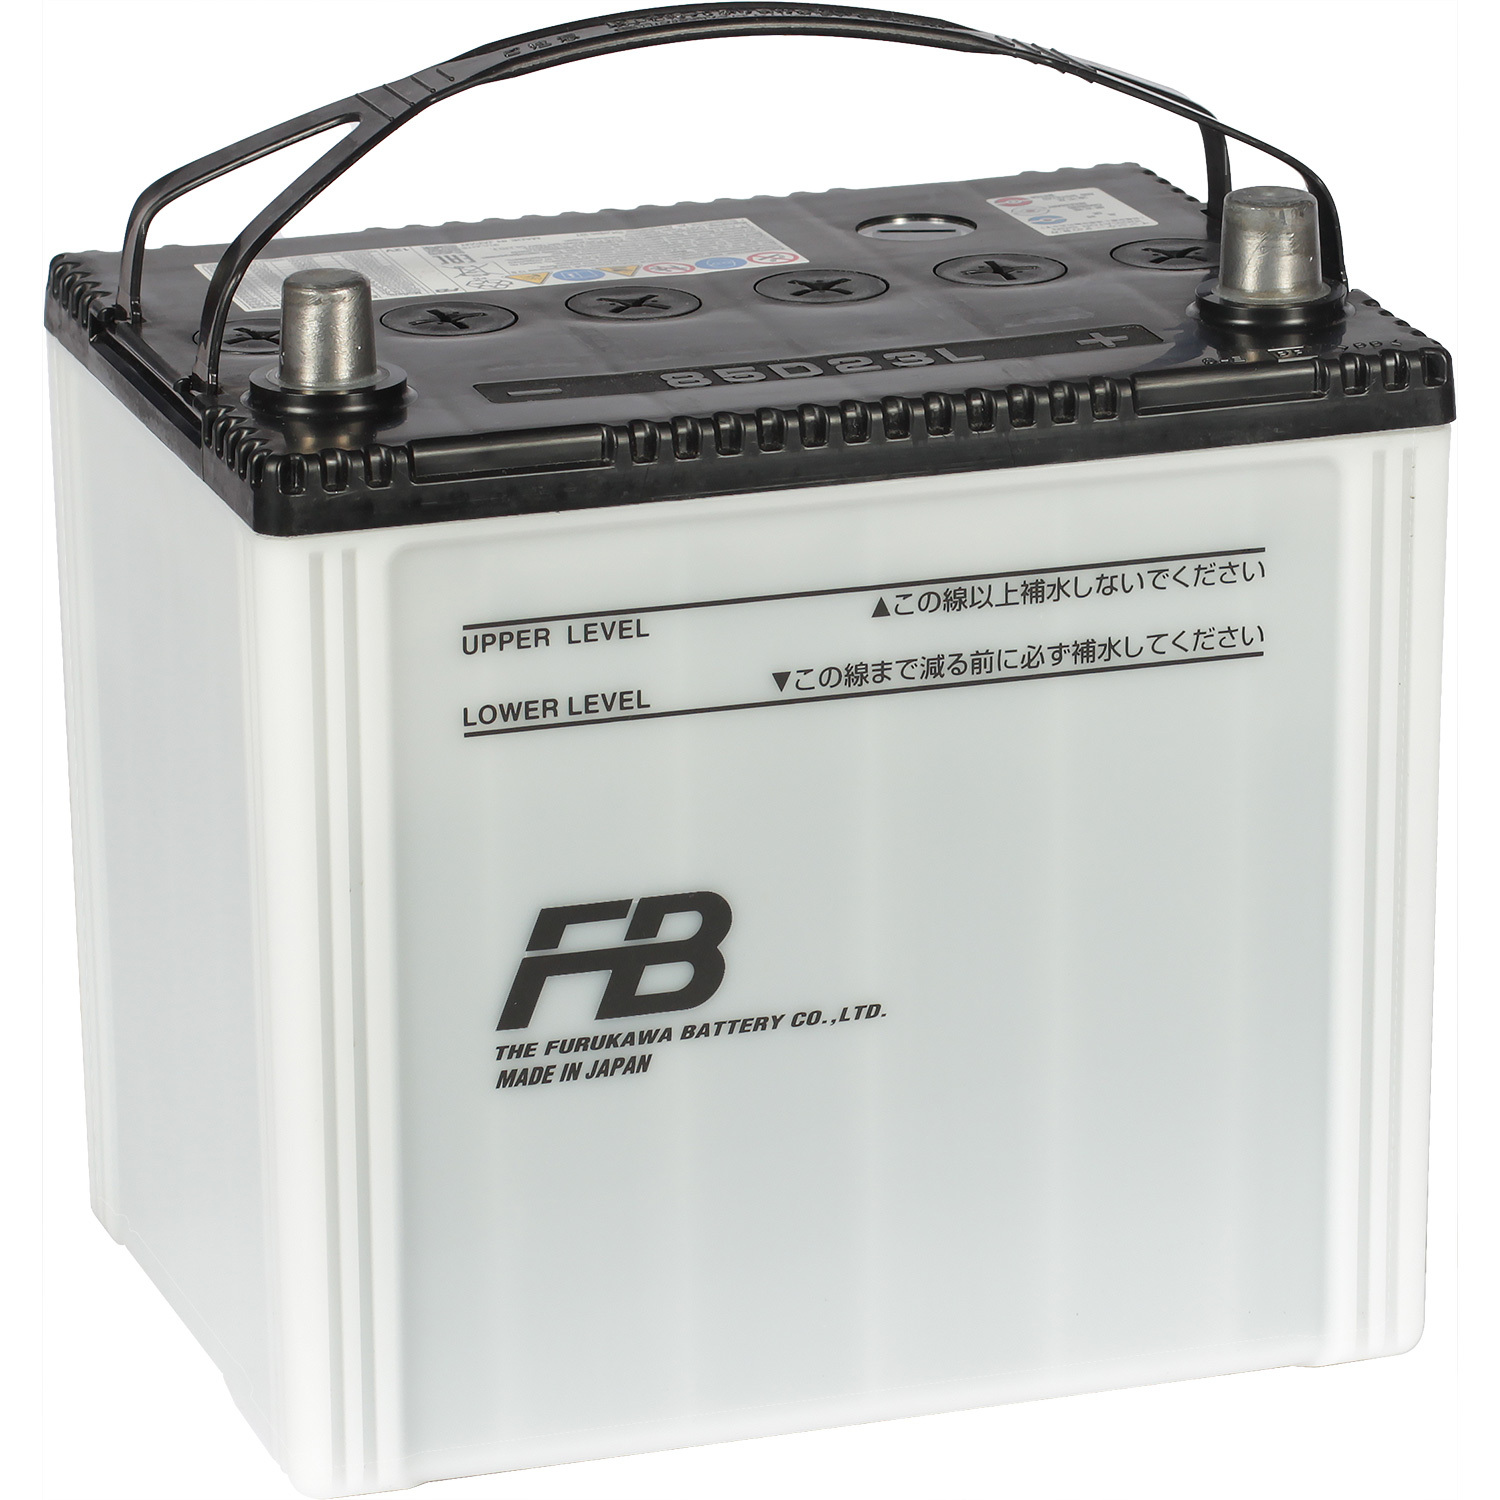 Furukawa Battery Автомобильный аккумулятор Furukawa Battery Altica High-Grade 70 Ач обратная полярность D23L электрическая машина s969 s969 для furukawa fitels178 s178a s178a v2 s153 s123